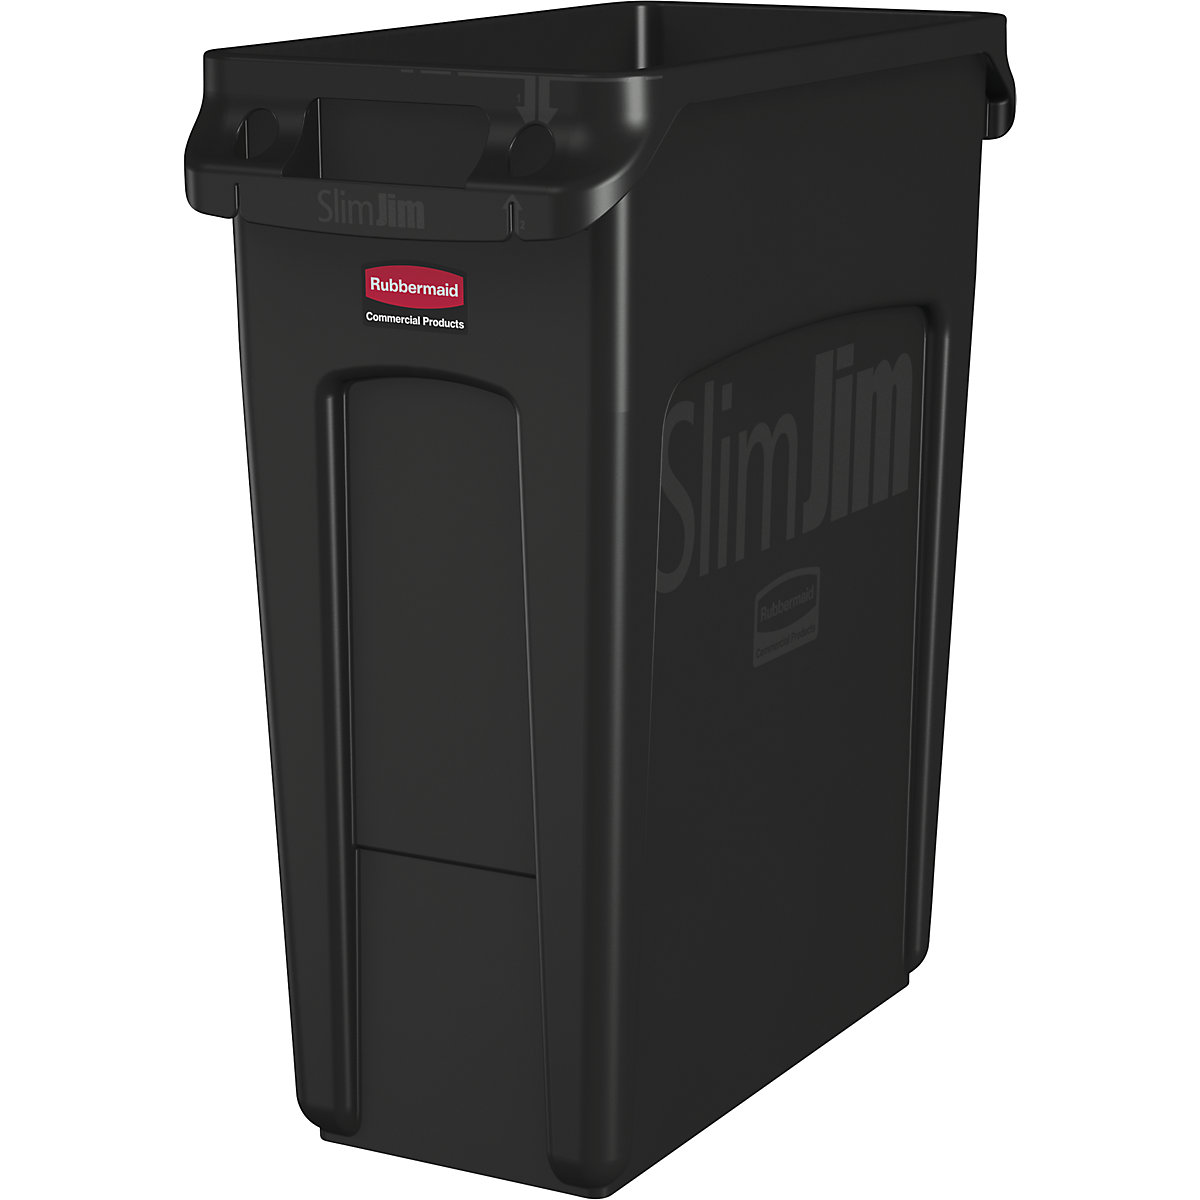 Verzamelaar voor kringloopmateriaal/afvalbak SLIM JIM® – Rubbermaid, volume 87 l, met ventilatiekanalen, zwart-14